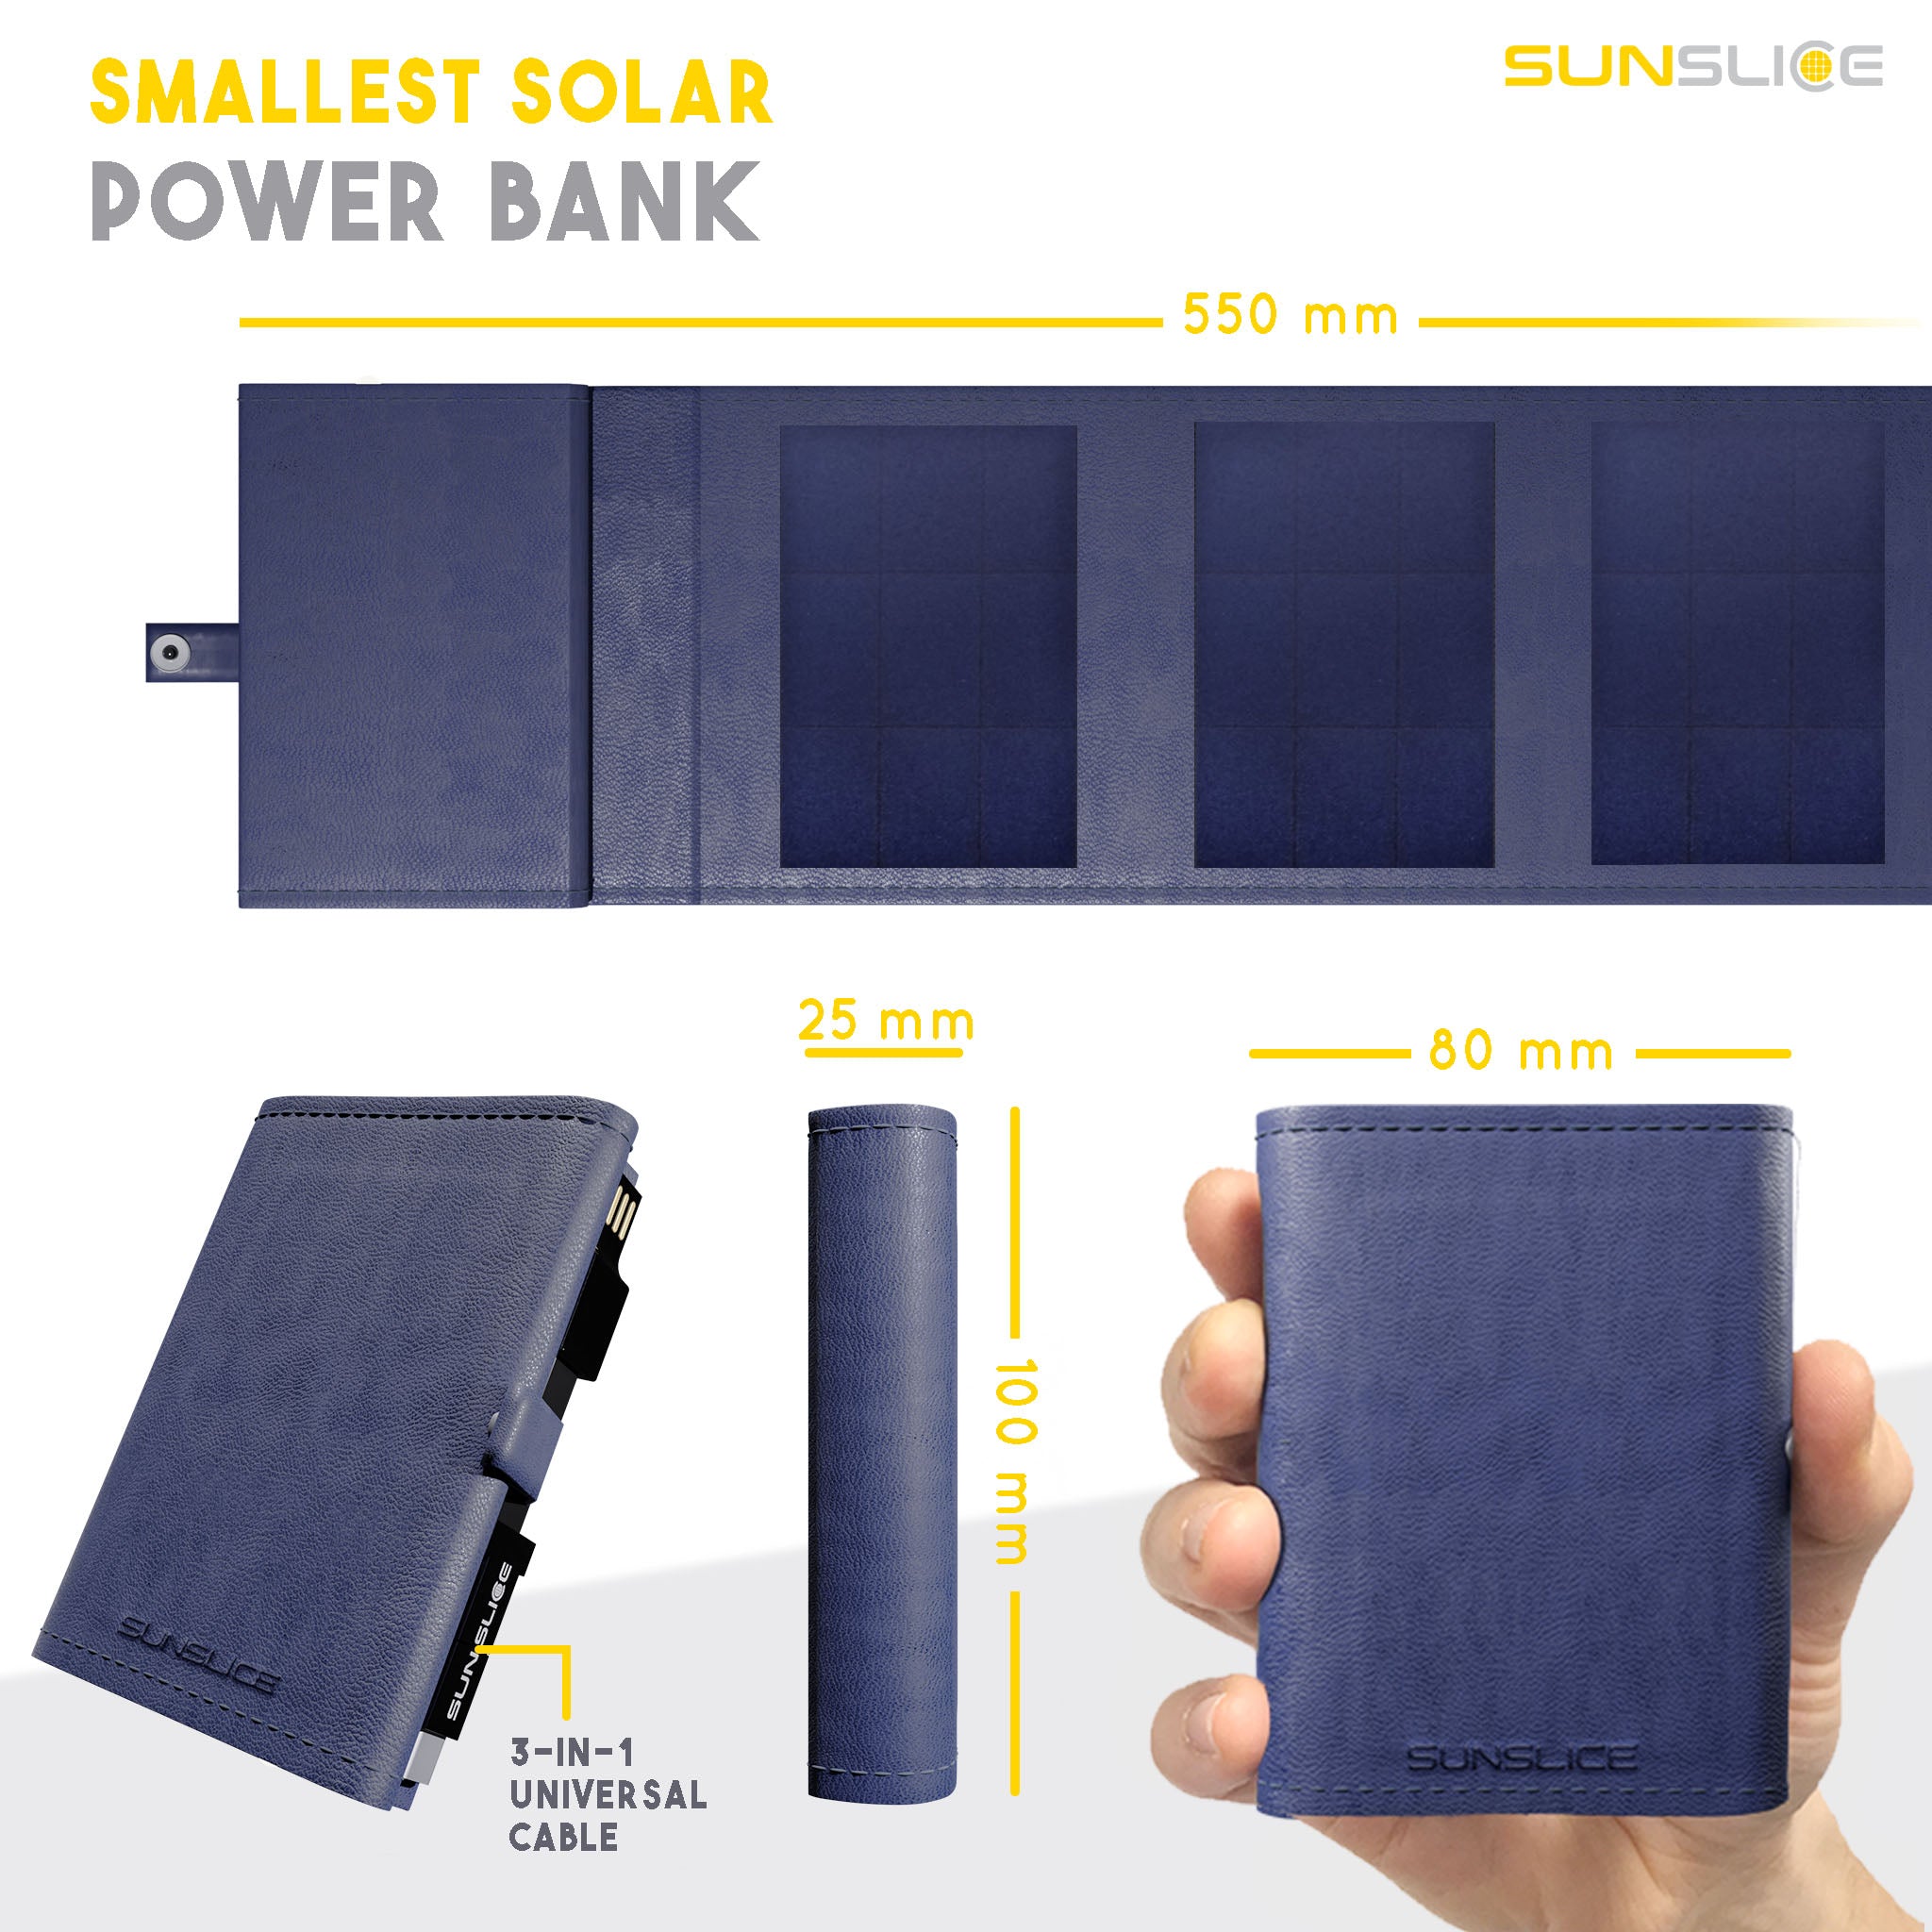 Technische Daten photon kleinste solar power bank. Größe: geschlossen: 100mm, 25mm, 80mm. Offen: 550mm, 3mm, 80mm